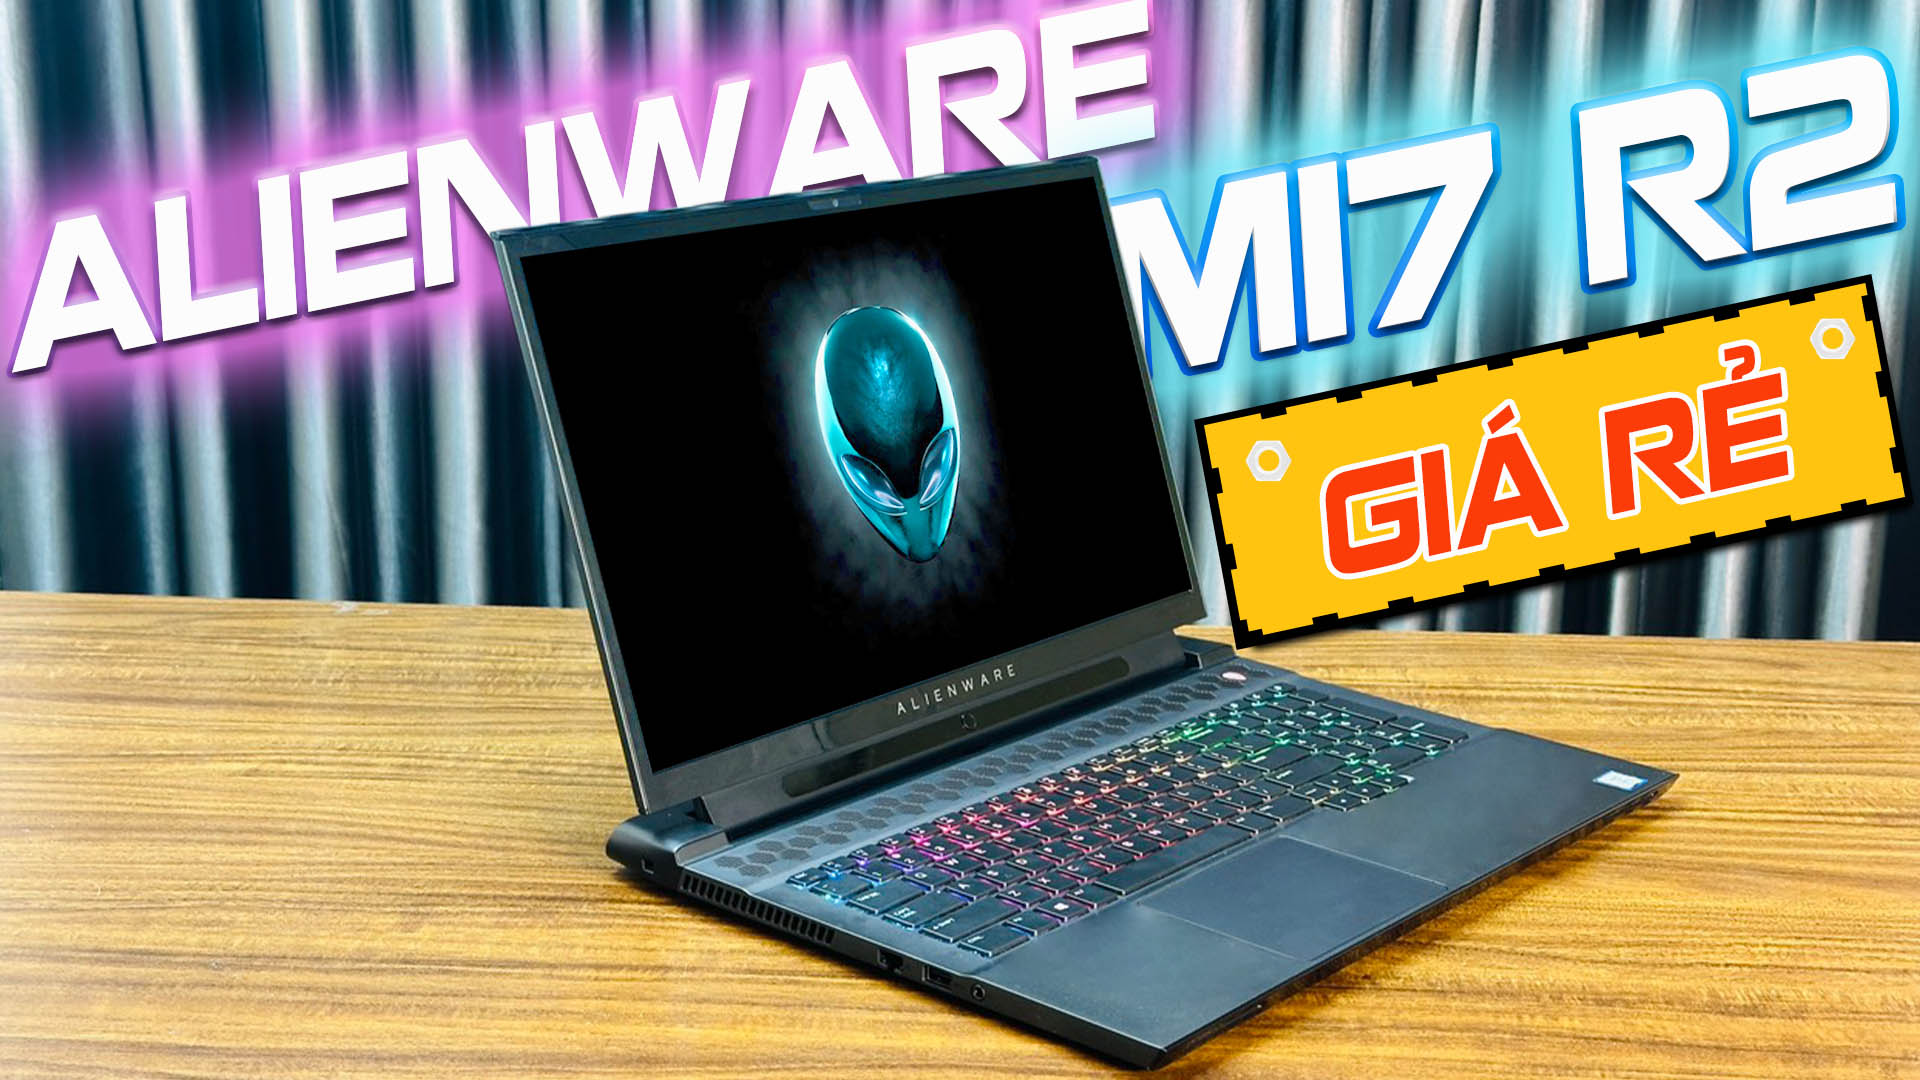 Video "Trên tay" Laptop Gaming AlienWare M17 R2